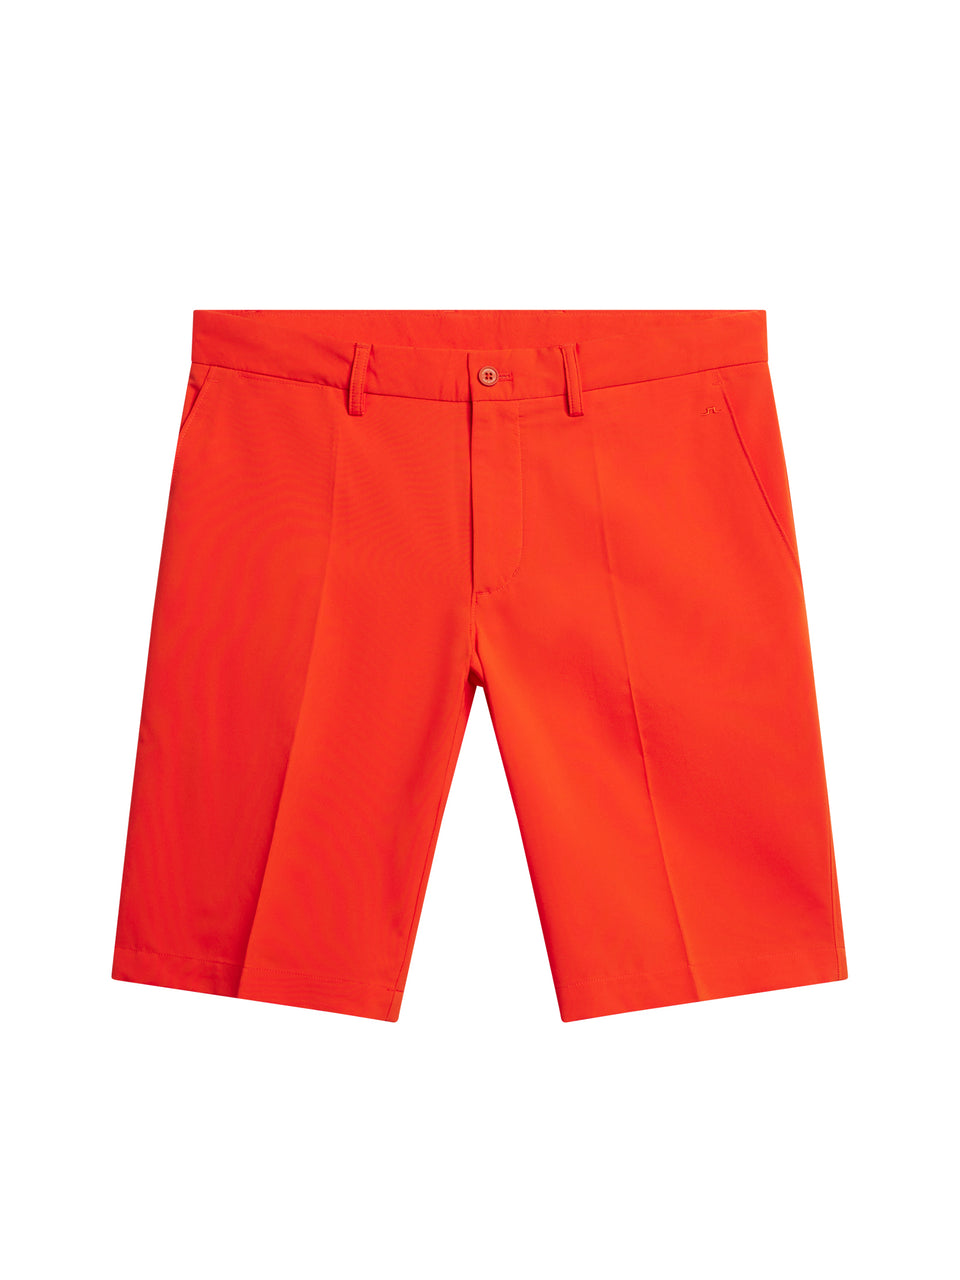 Somle Shorts / Tangerine Tango